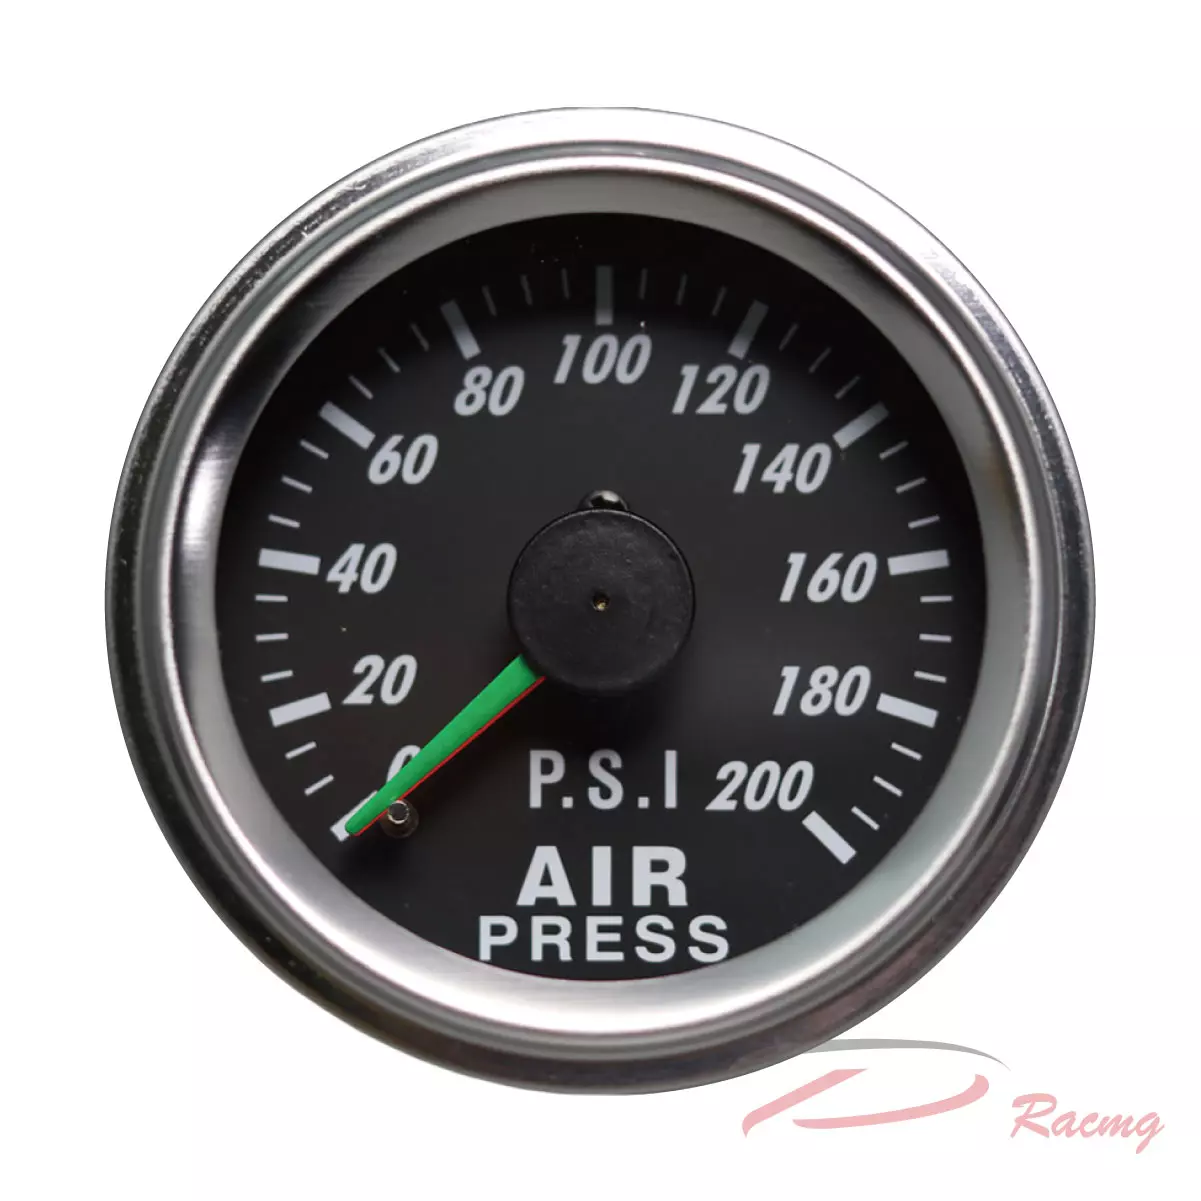 Dracing, Depo racing, dual needle, digital, air pressure gauge kit, air ride suspension, air bag, air brake